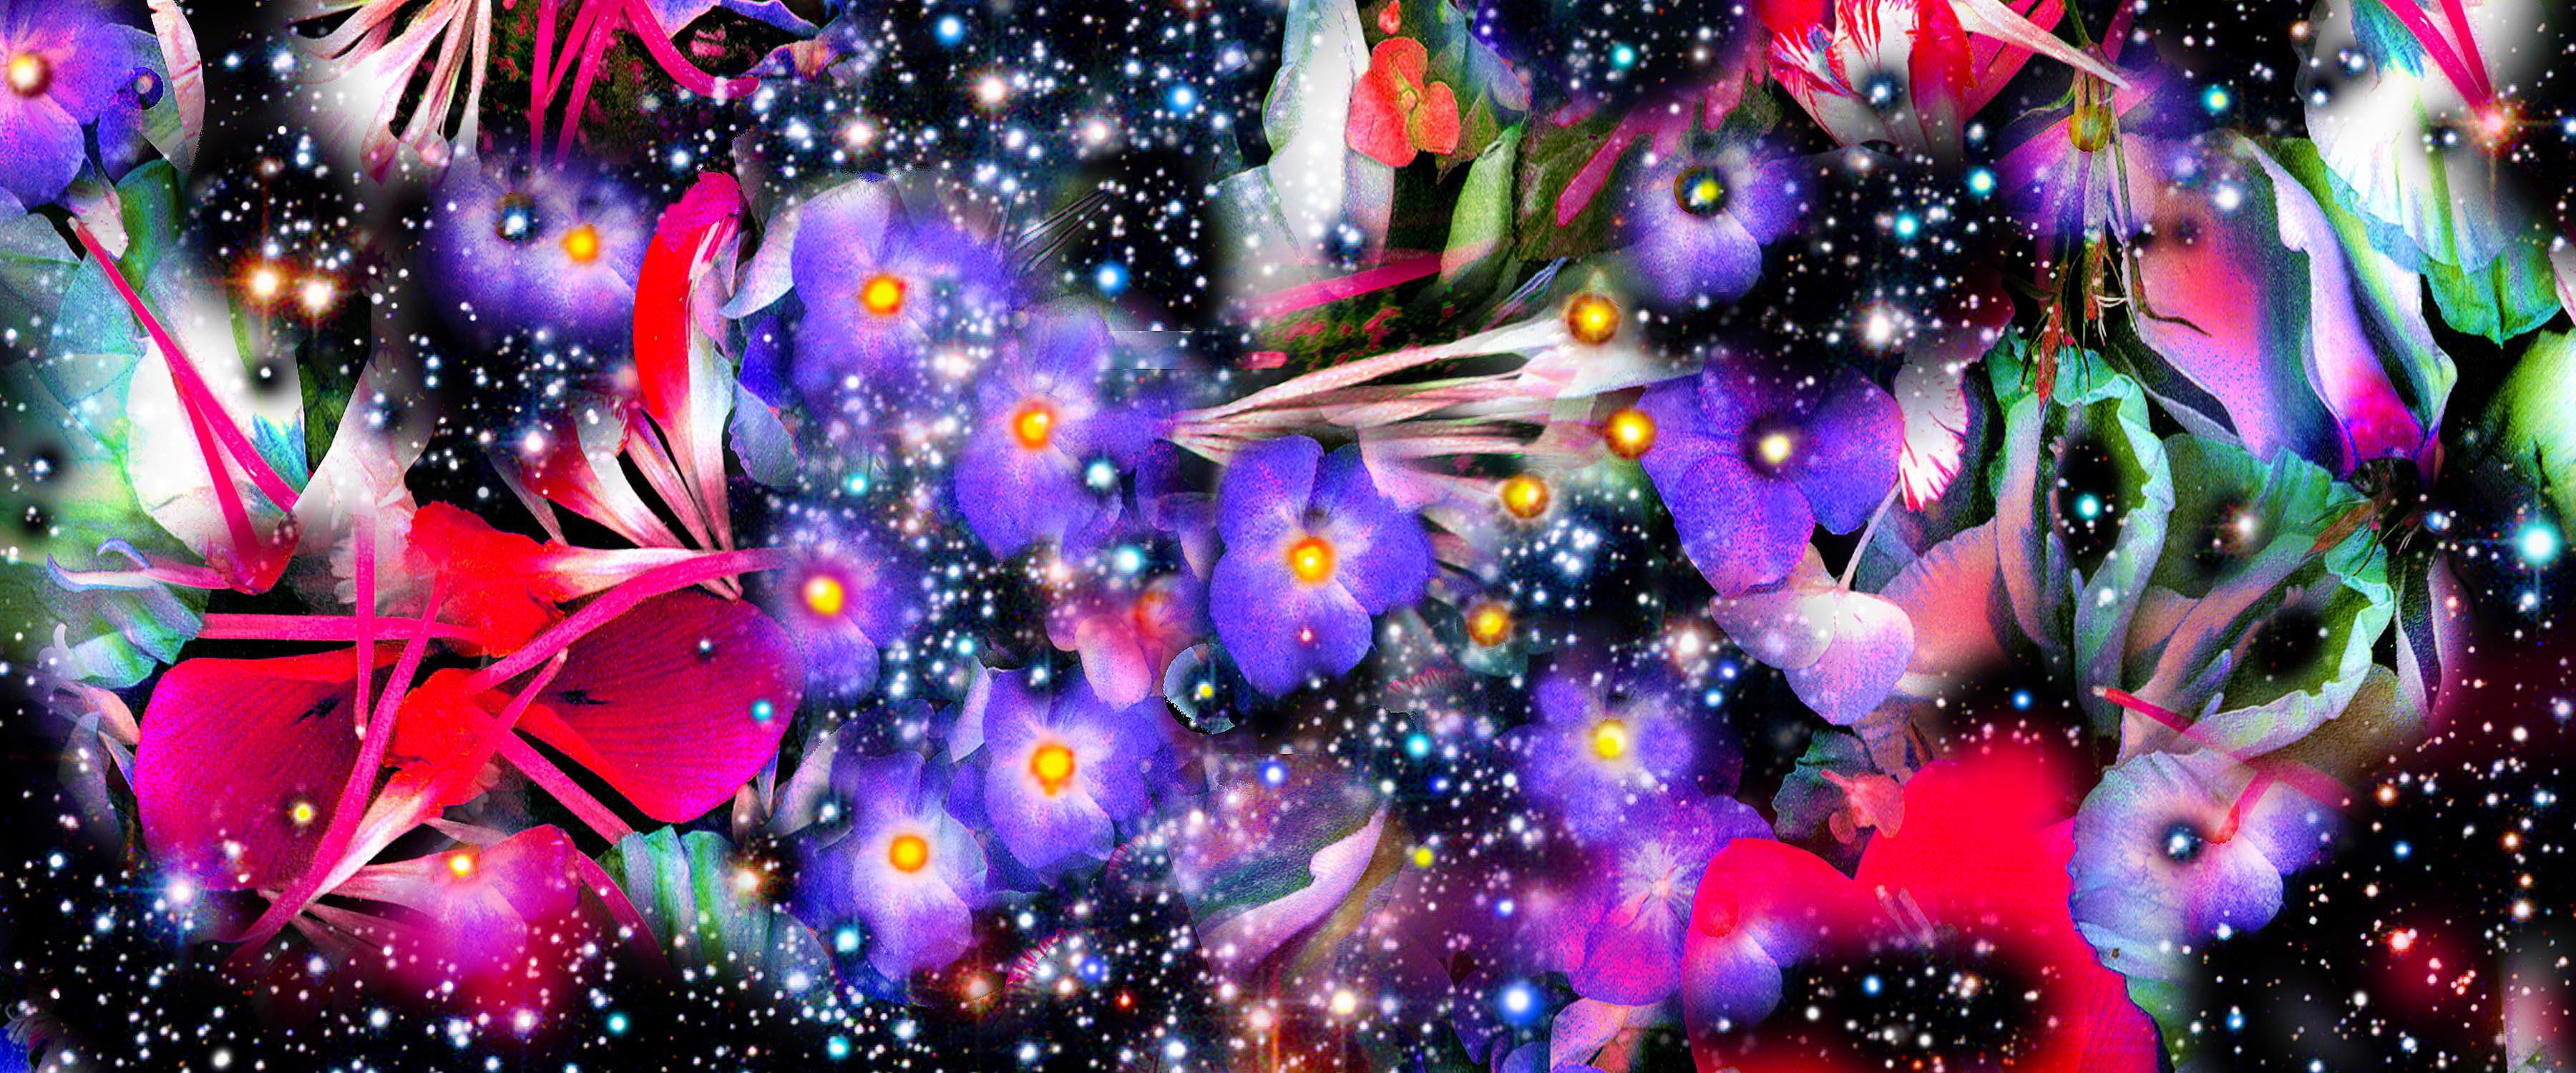 Jardins et Galaxies Fleurs violettes Motifs de ciel nocturne abstraits et colorés 24 po. x 42 po. 